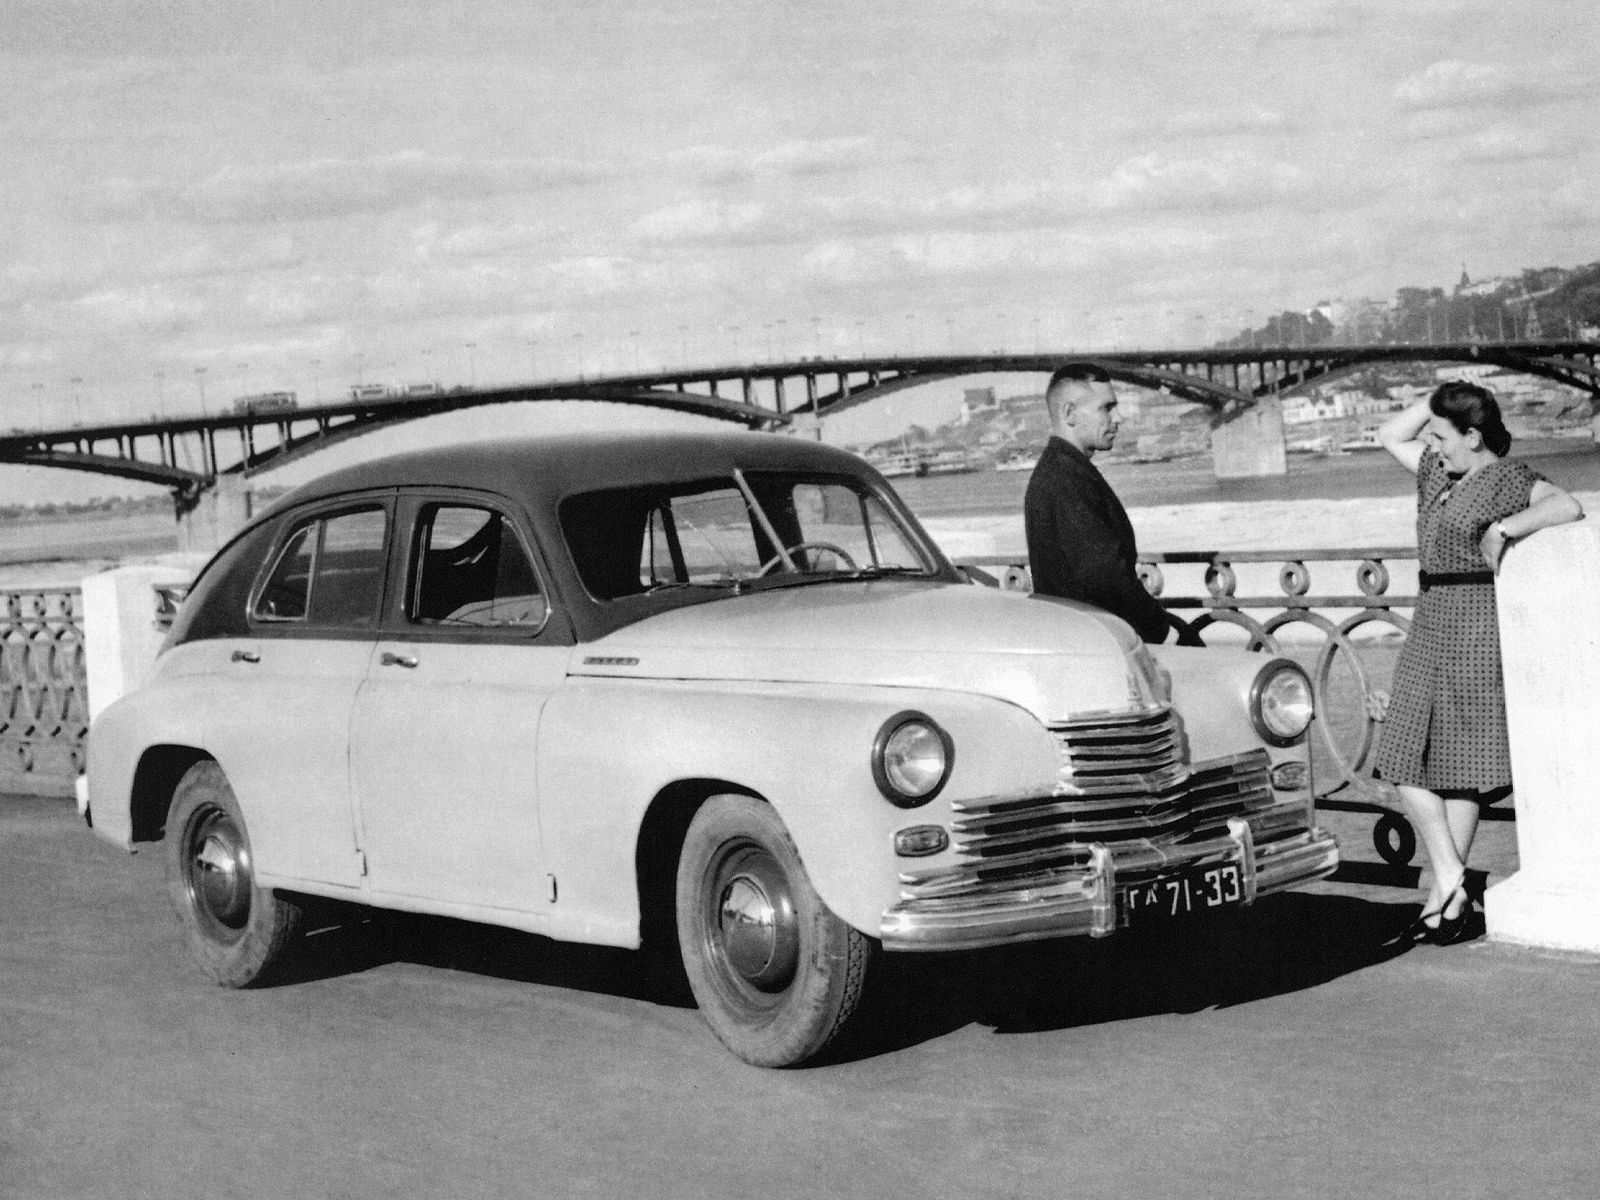 Автомобиль советских времен